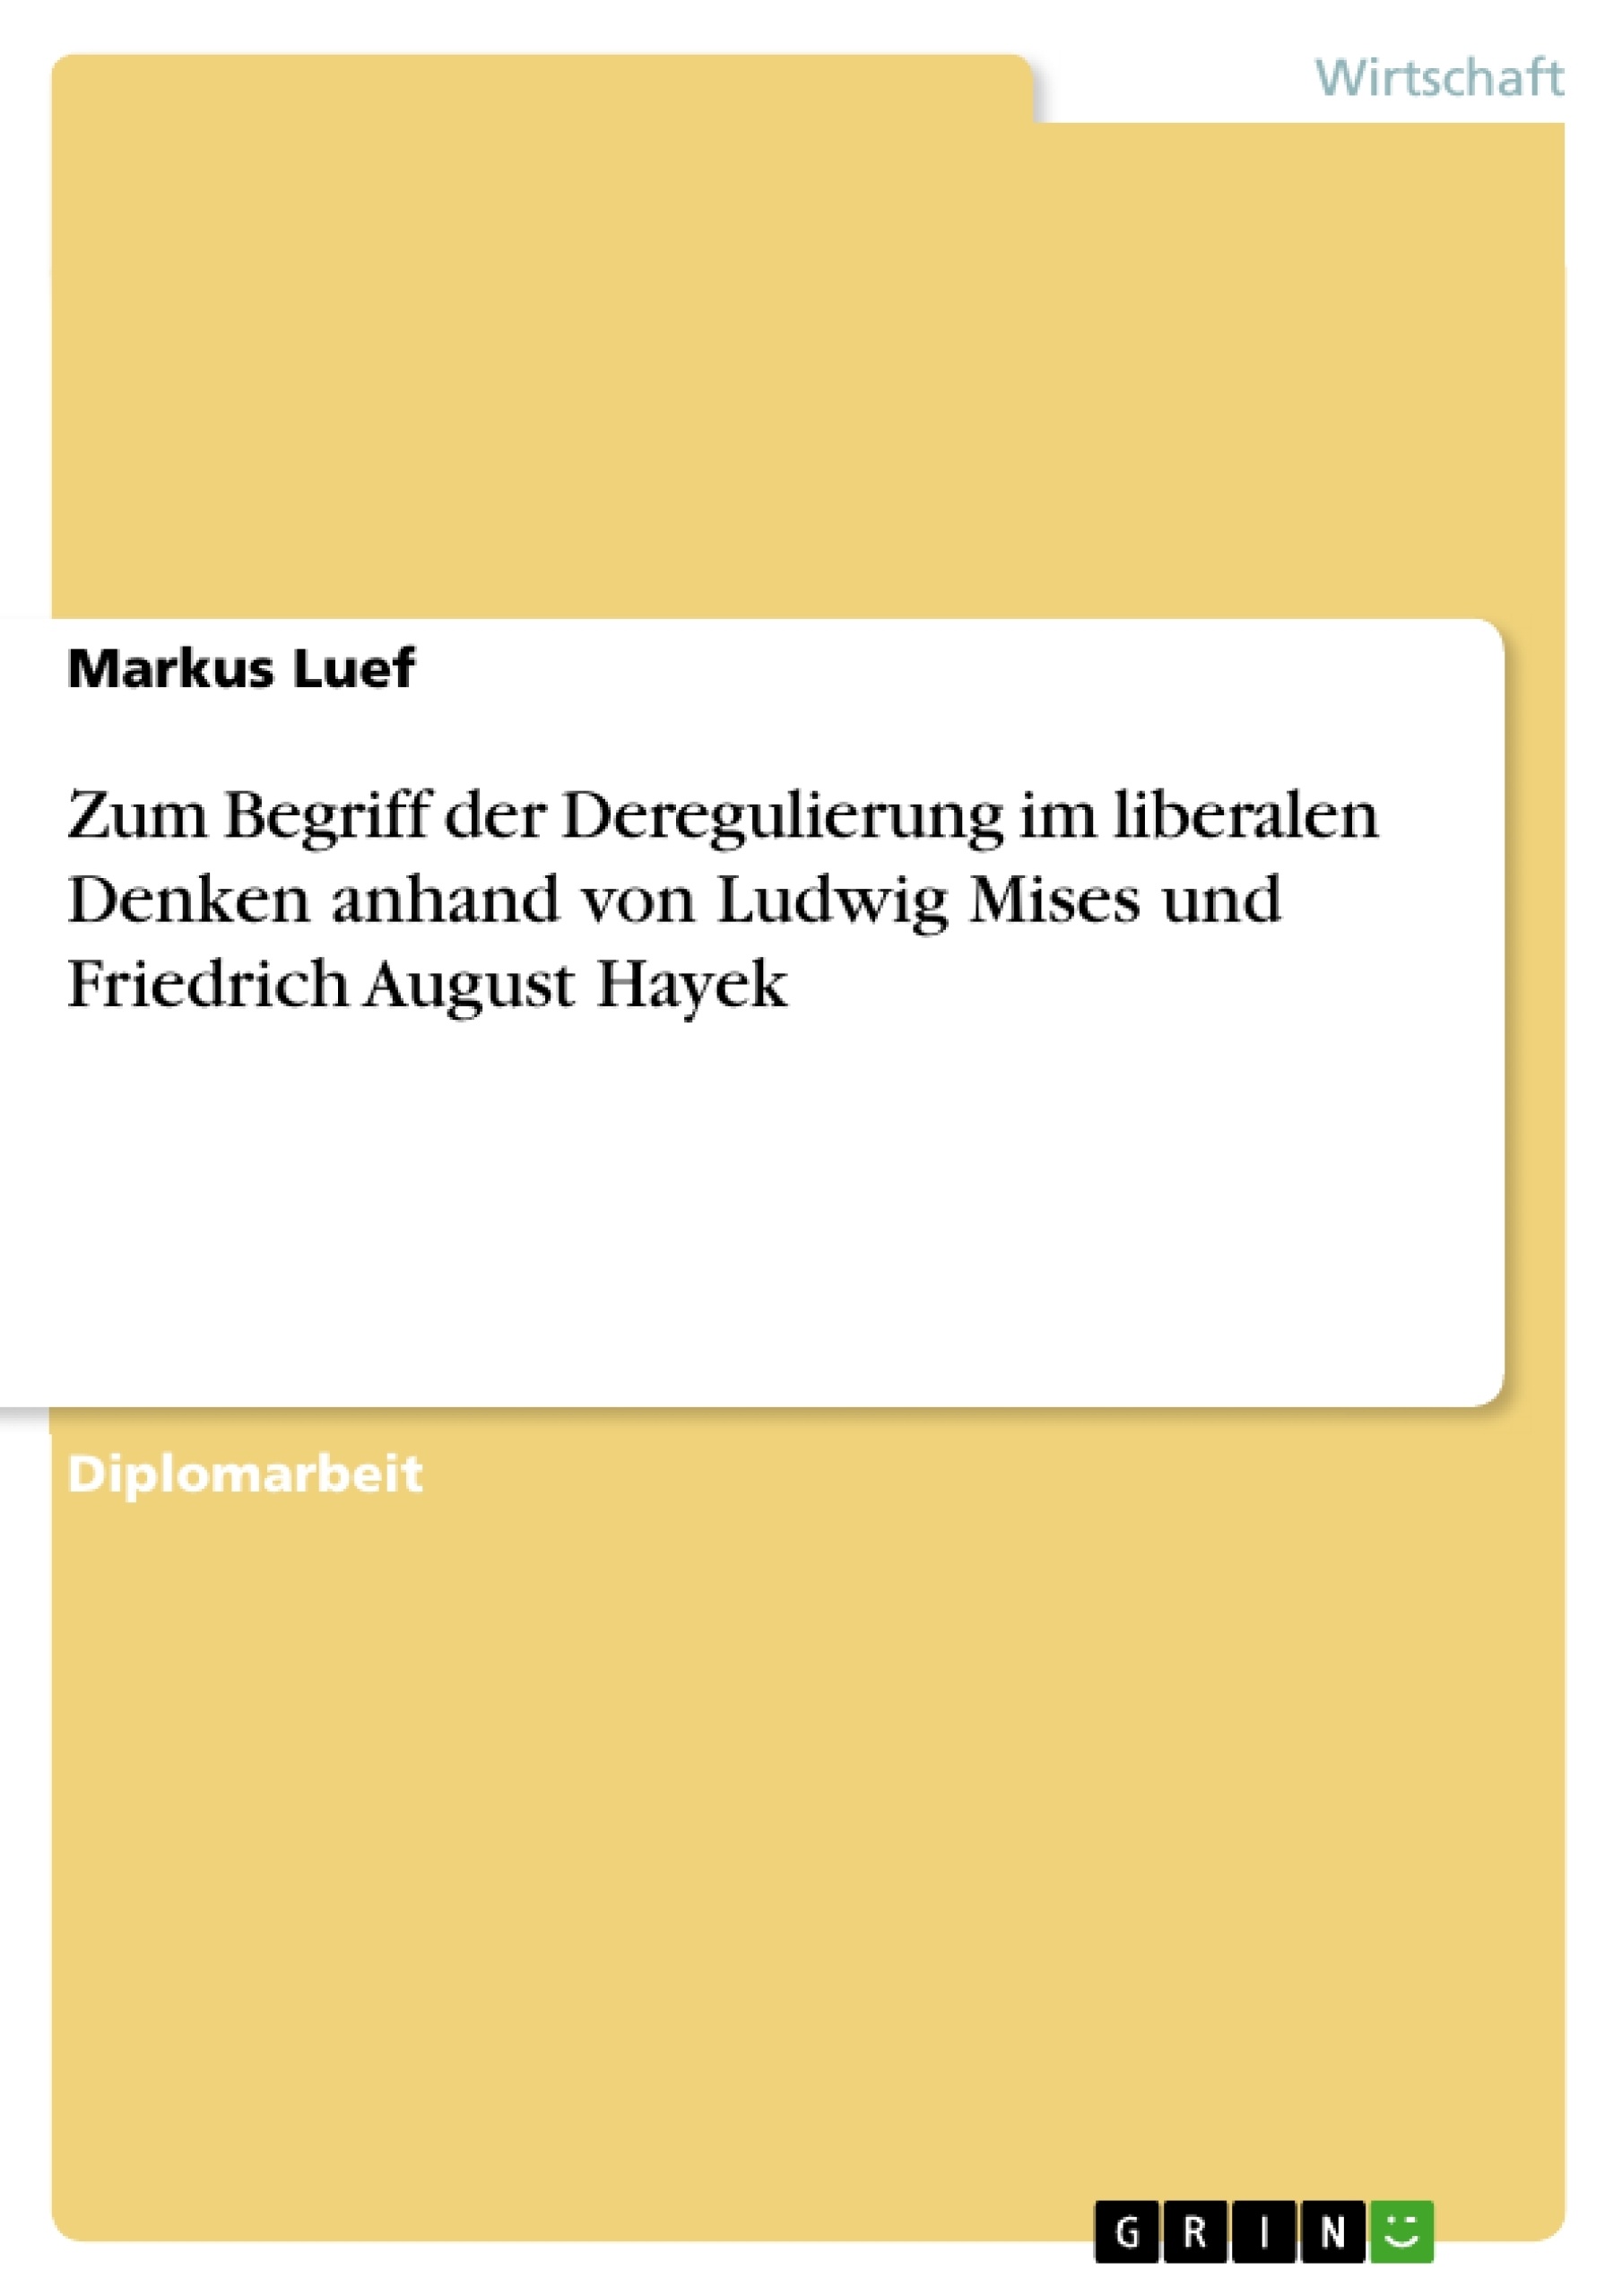 Titel: Zum Begriff der Deregulierung im liberalen Denken anhand von Ludwig Mises und Friedrich August Hayek